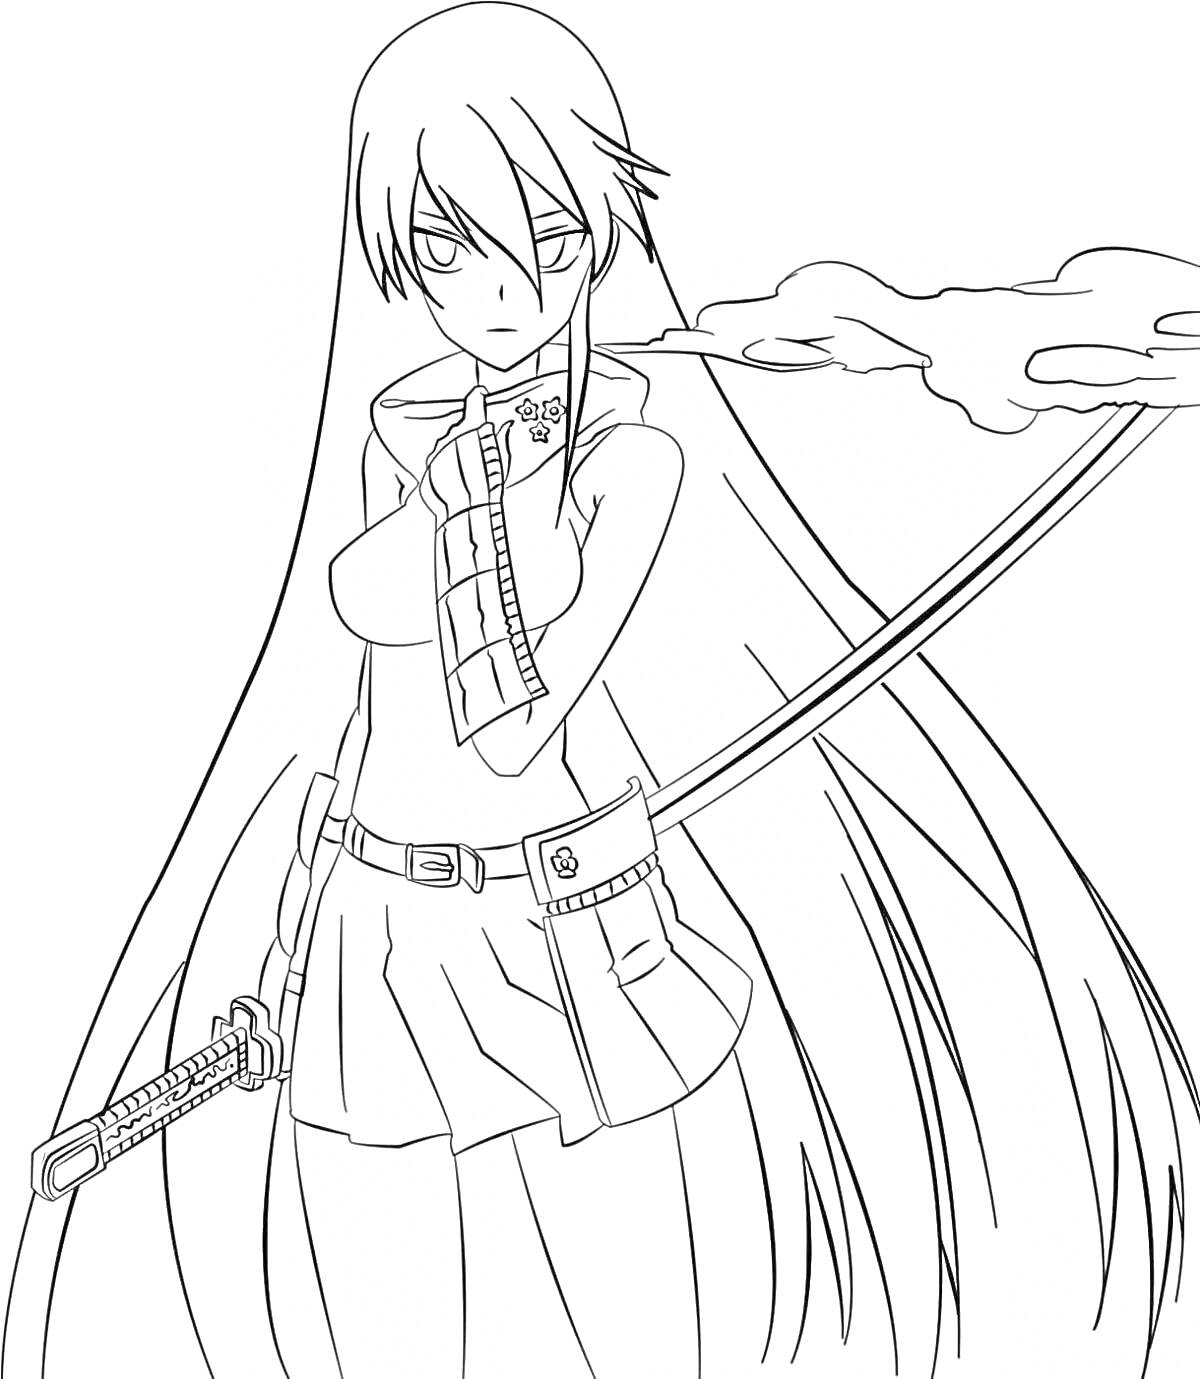 Девушка с мечом и длинными волосами, одета в топ с рукавами и юбку, ножны меча прикреплены к поясу.